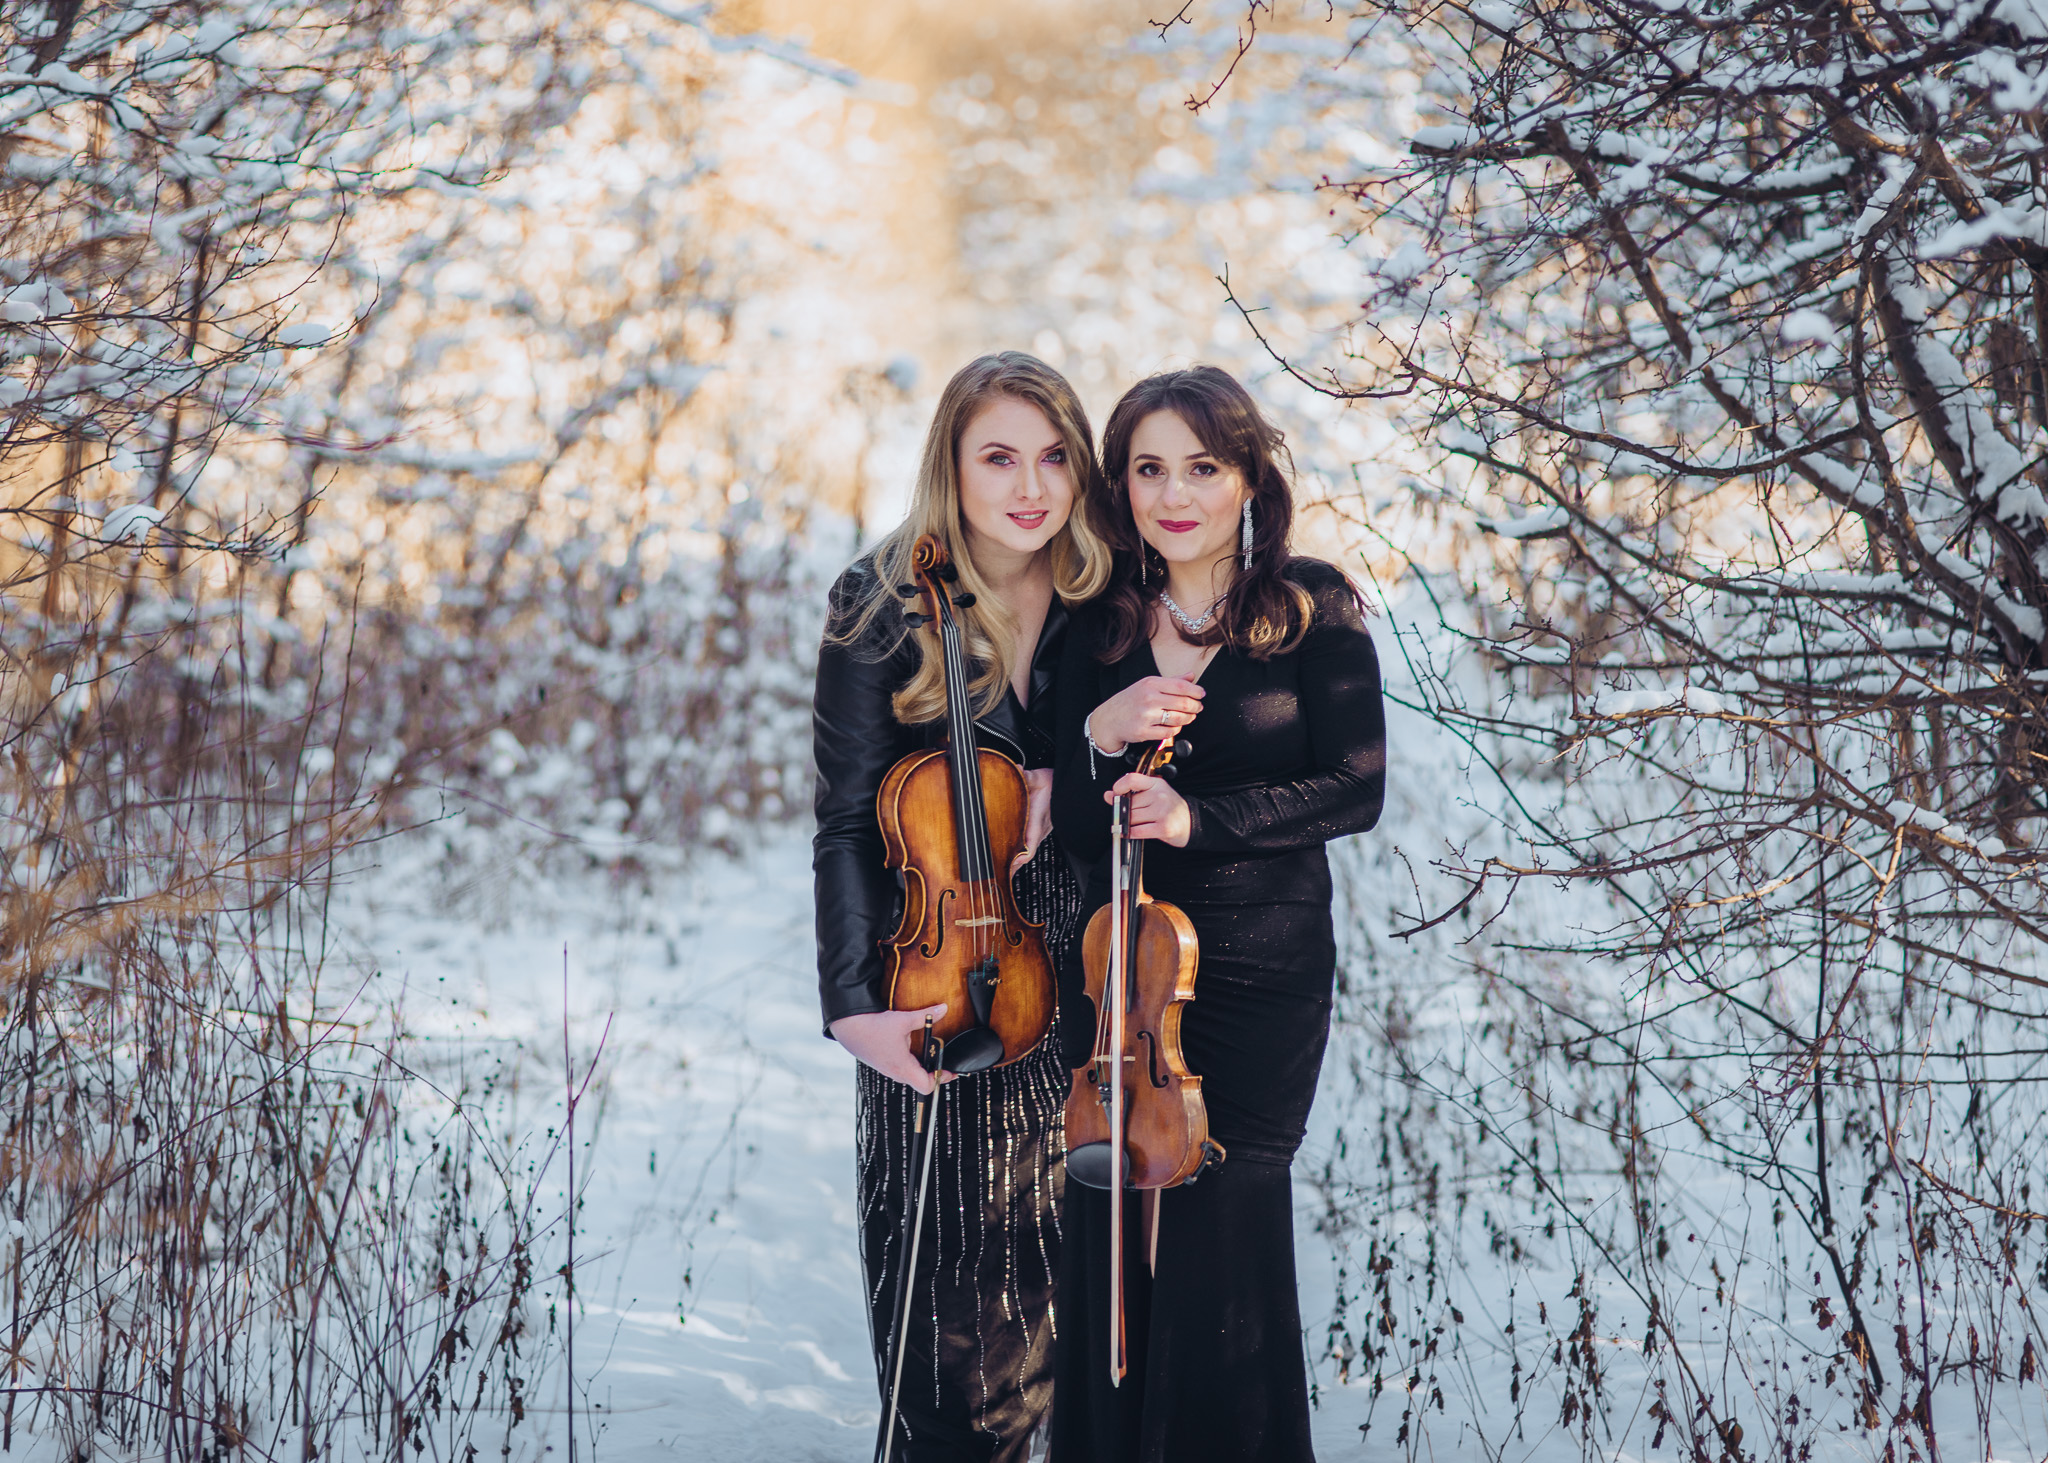 zimowa sesja portretowa ze skrzypcami warszawa wilanow